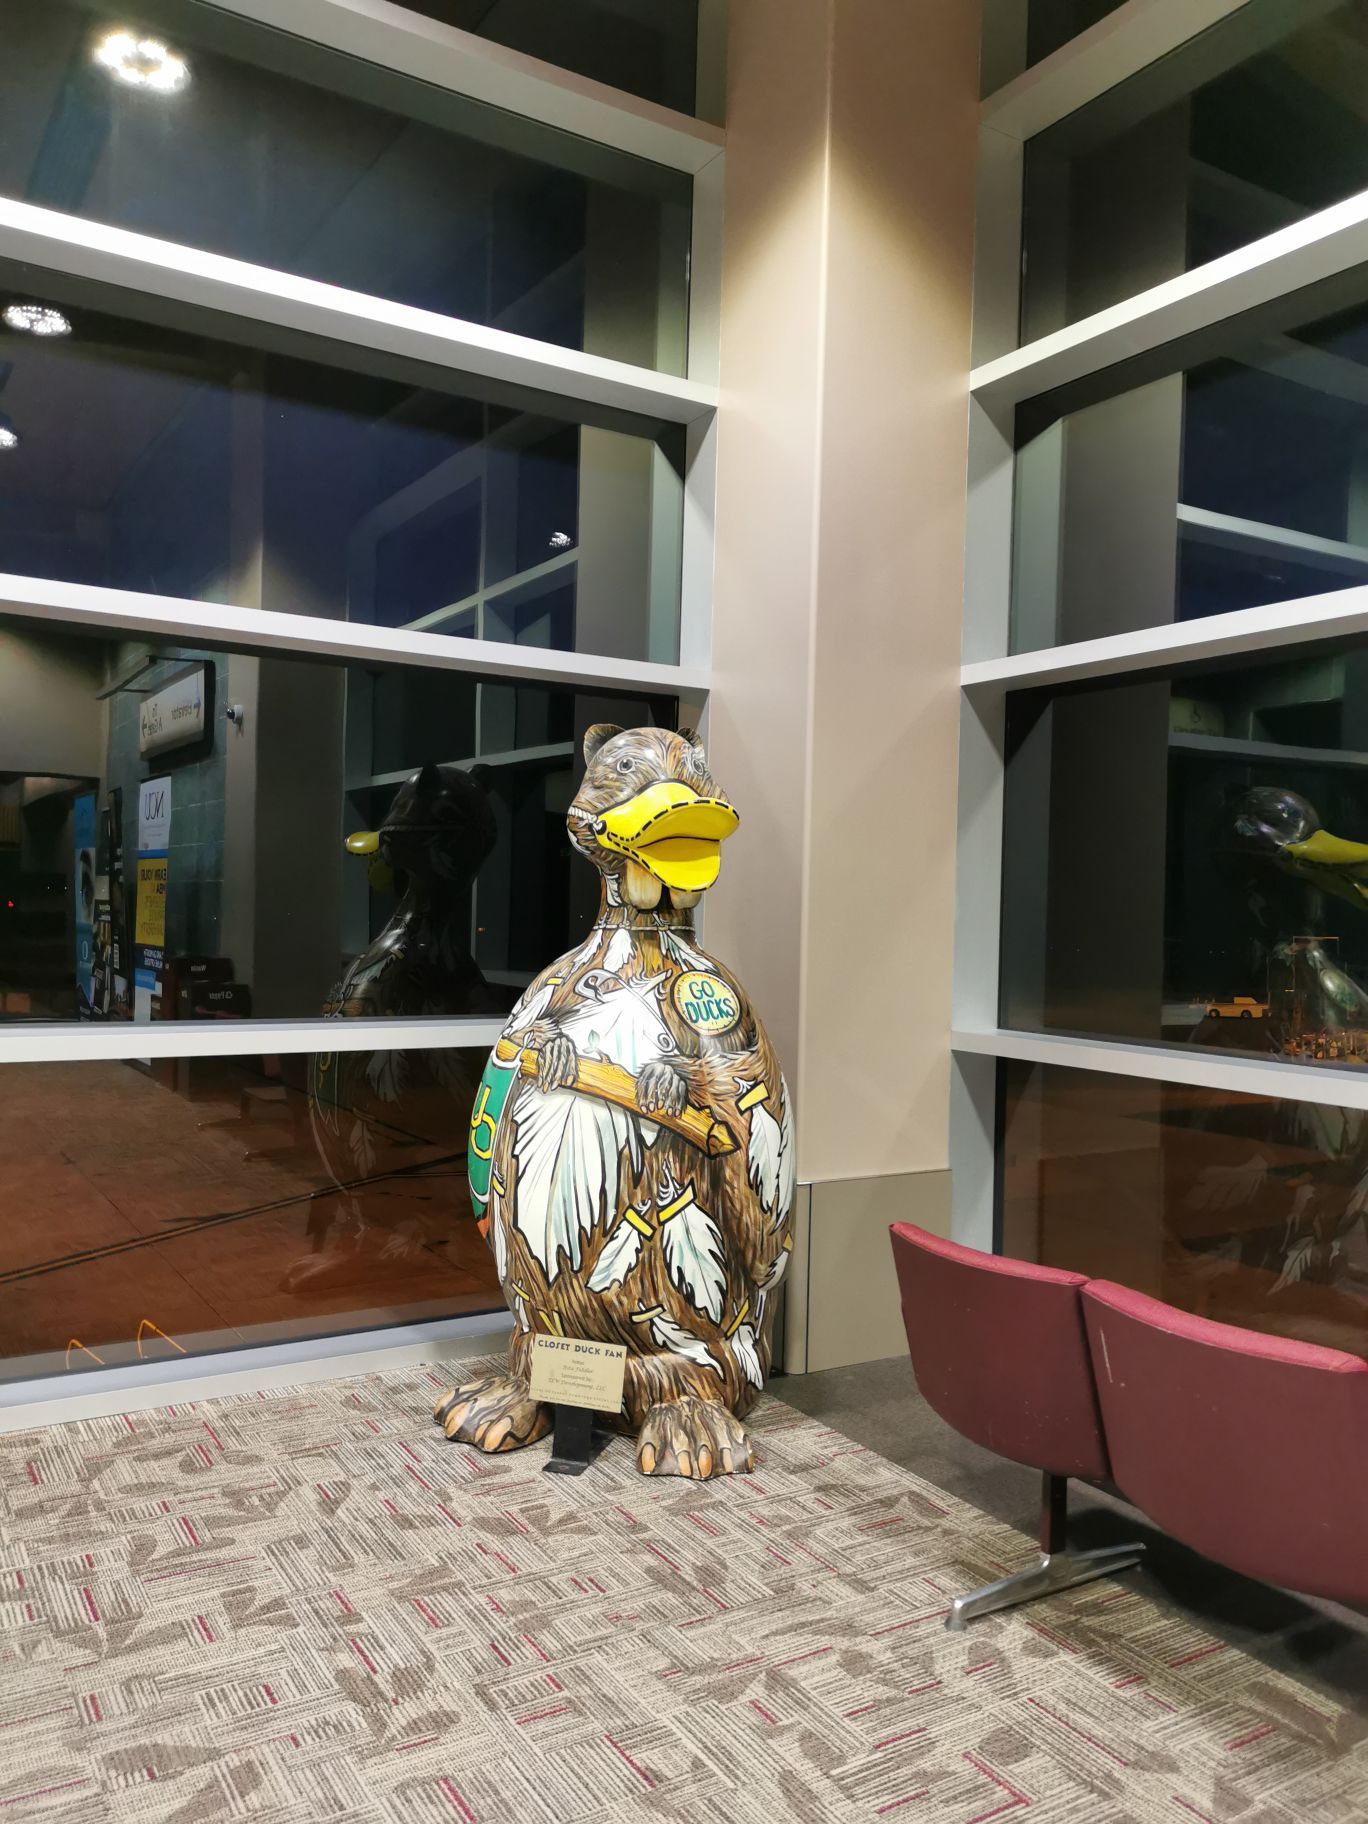 尤金机场，到处都是鸭子吉祥物。好像是俄勒冈大学的吉祥物。